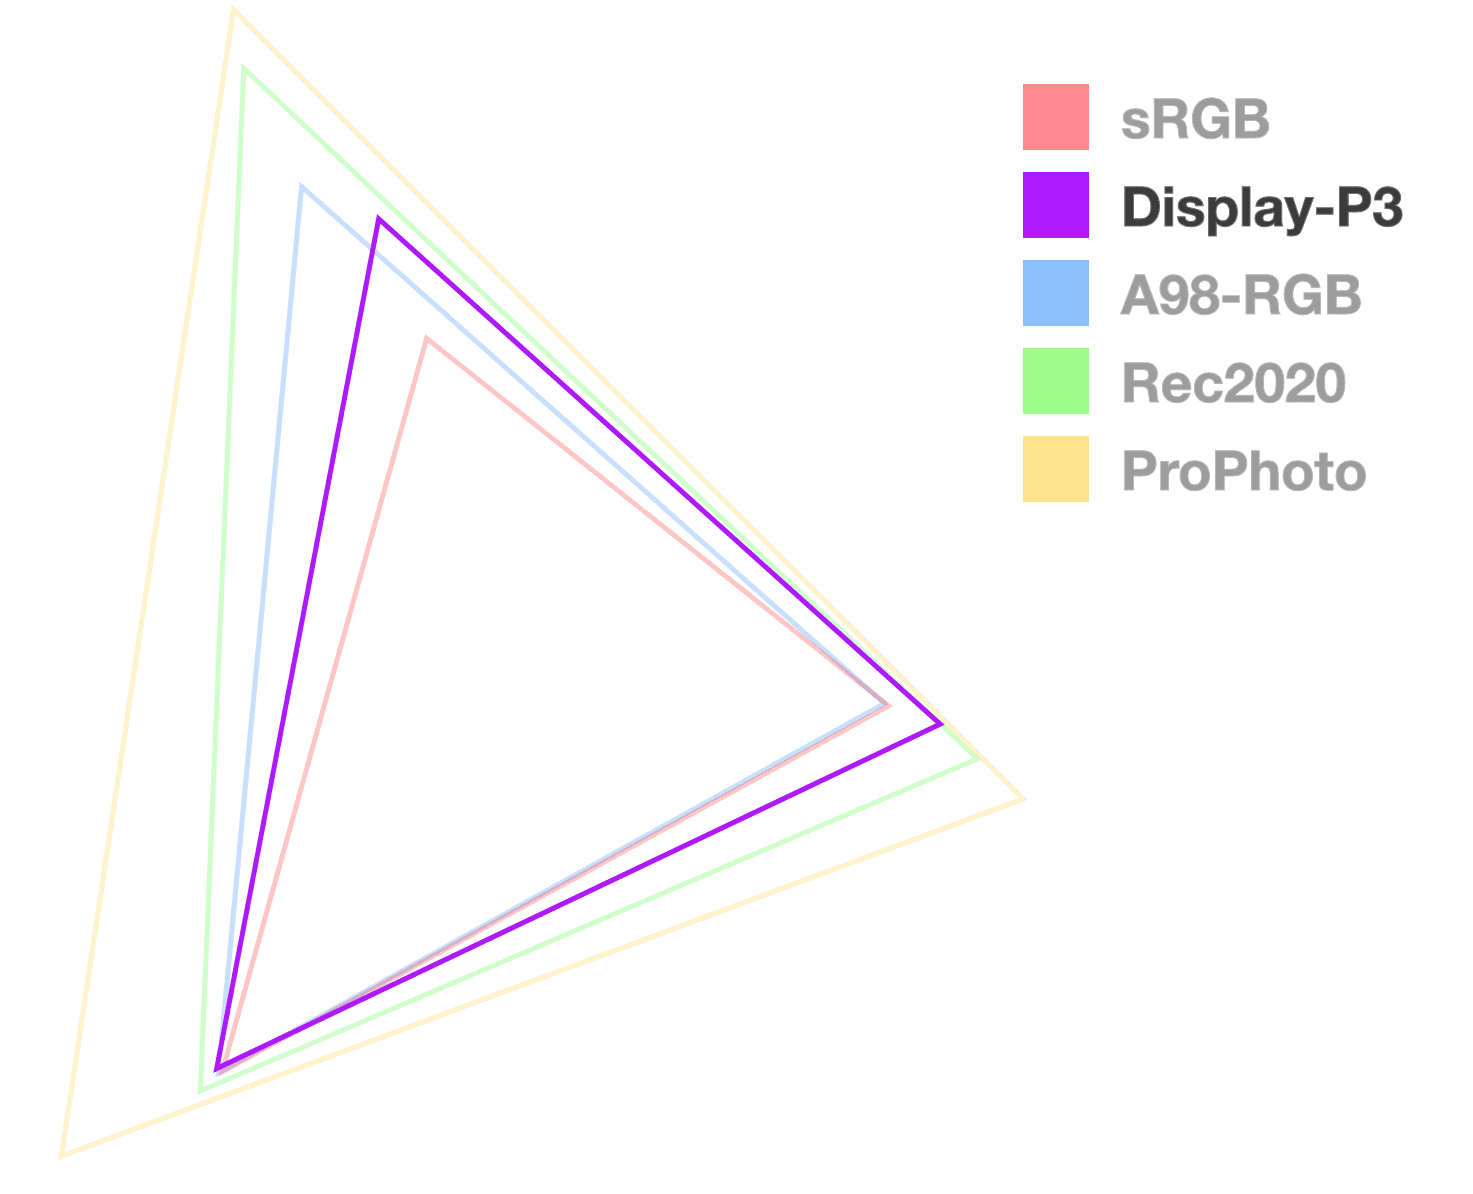 Треугольник дисплея P3 — единственный полностью непрозрачный, что помогает визуализировать размер гаммы. Выглядит как 2-й от самого маленького.